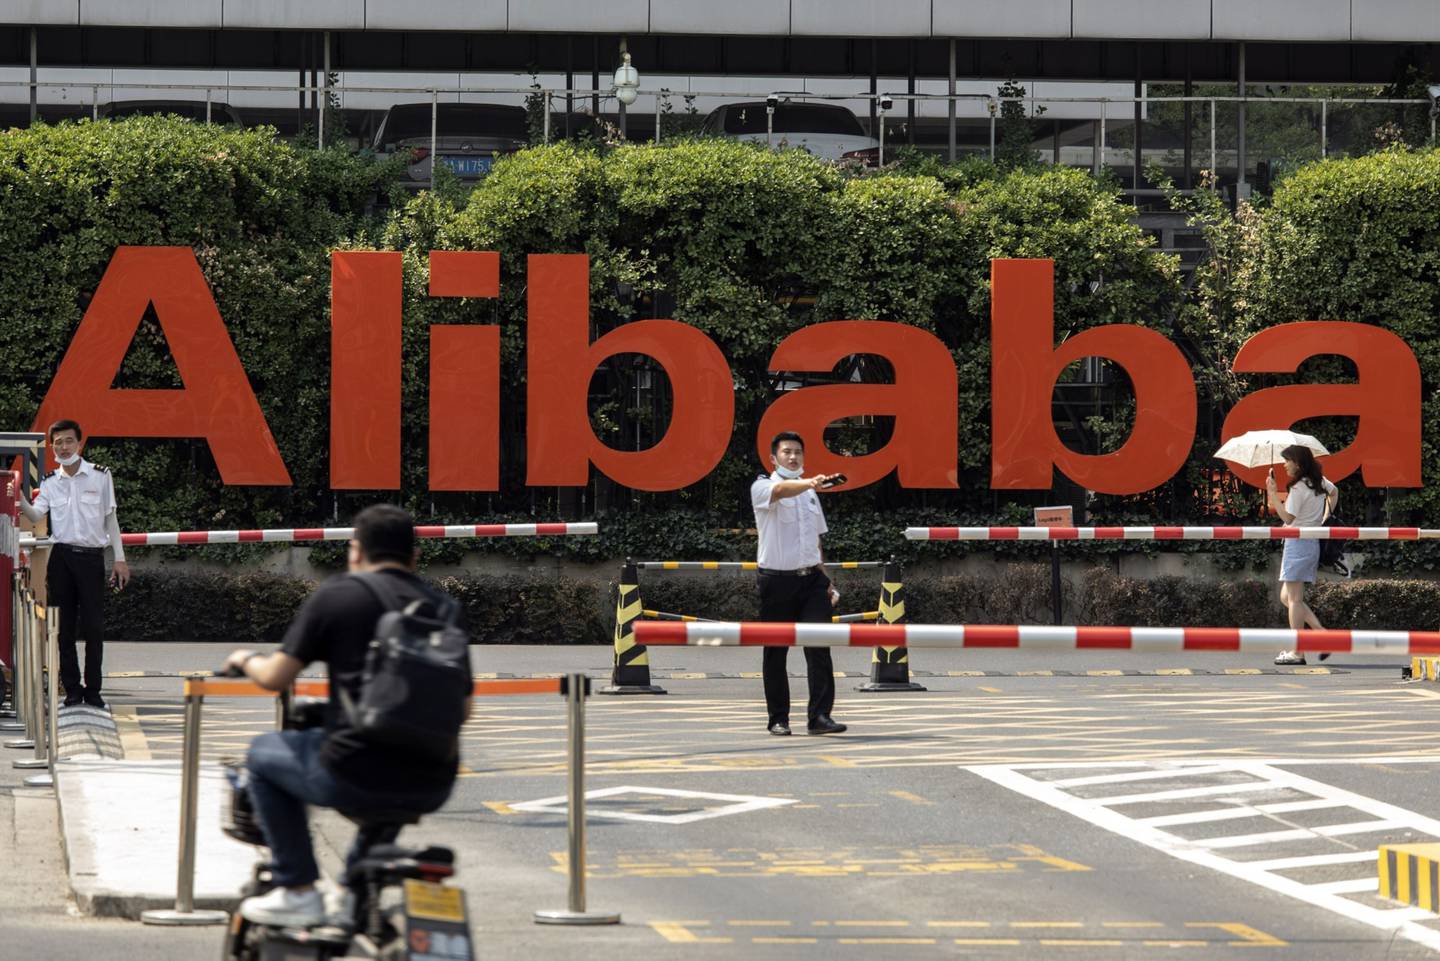 Señalización en la sede de Alibaba Group Holding Ltd. en Hangzhou, China.